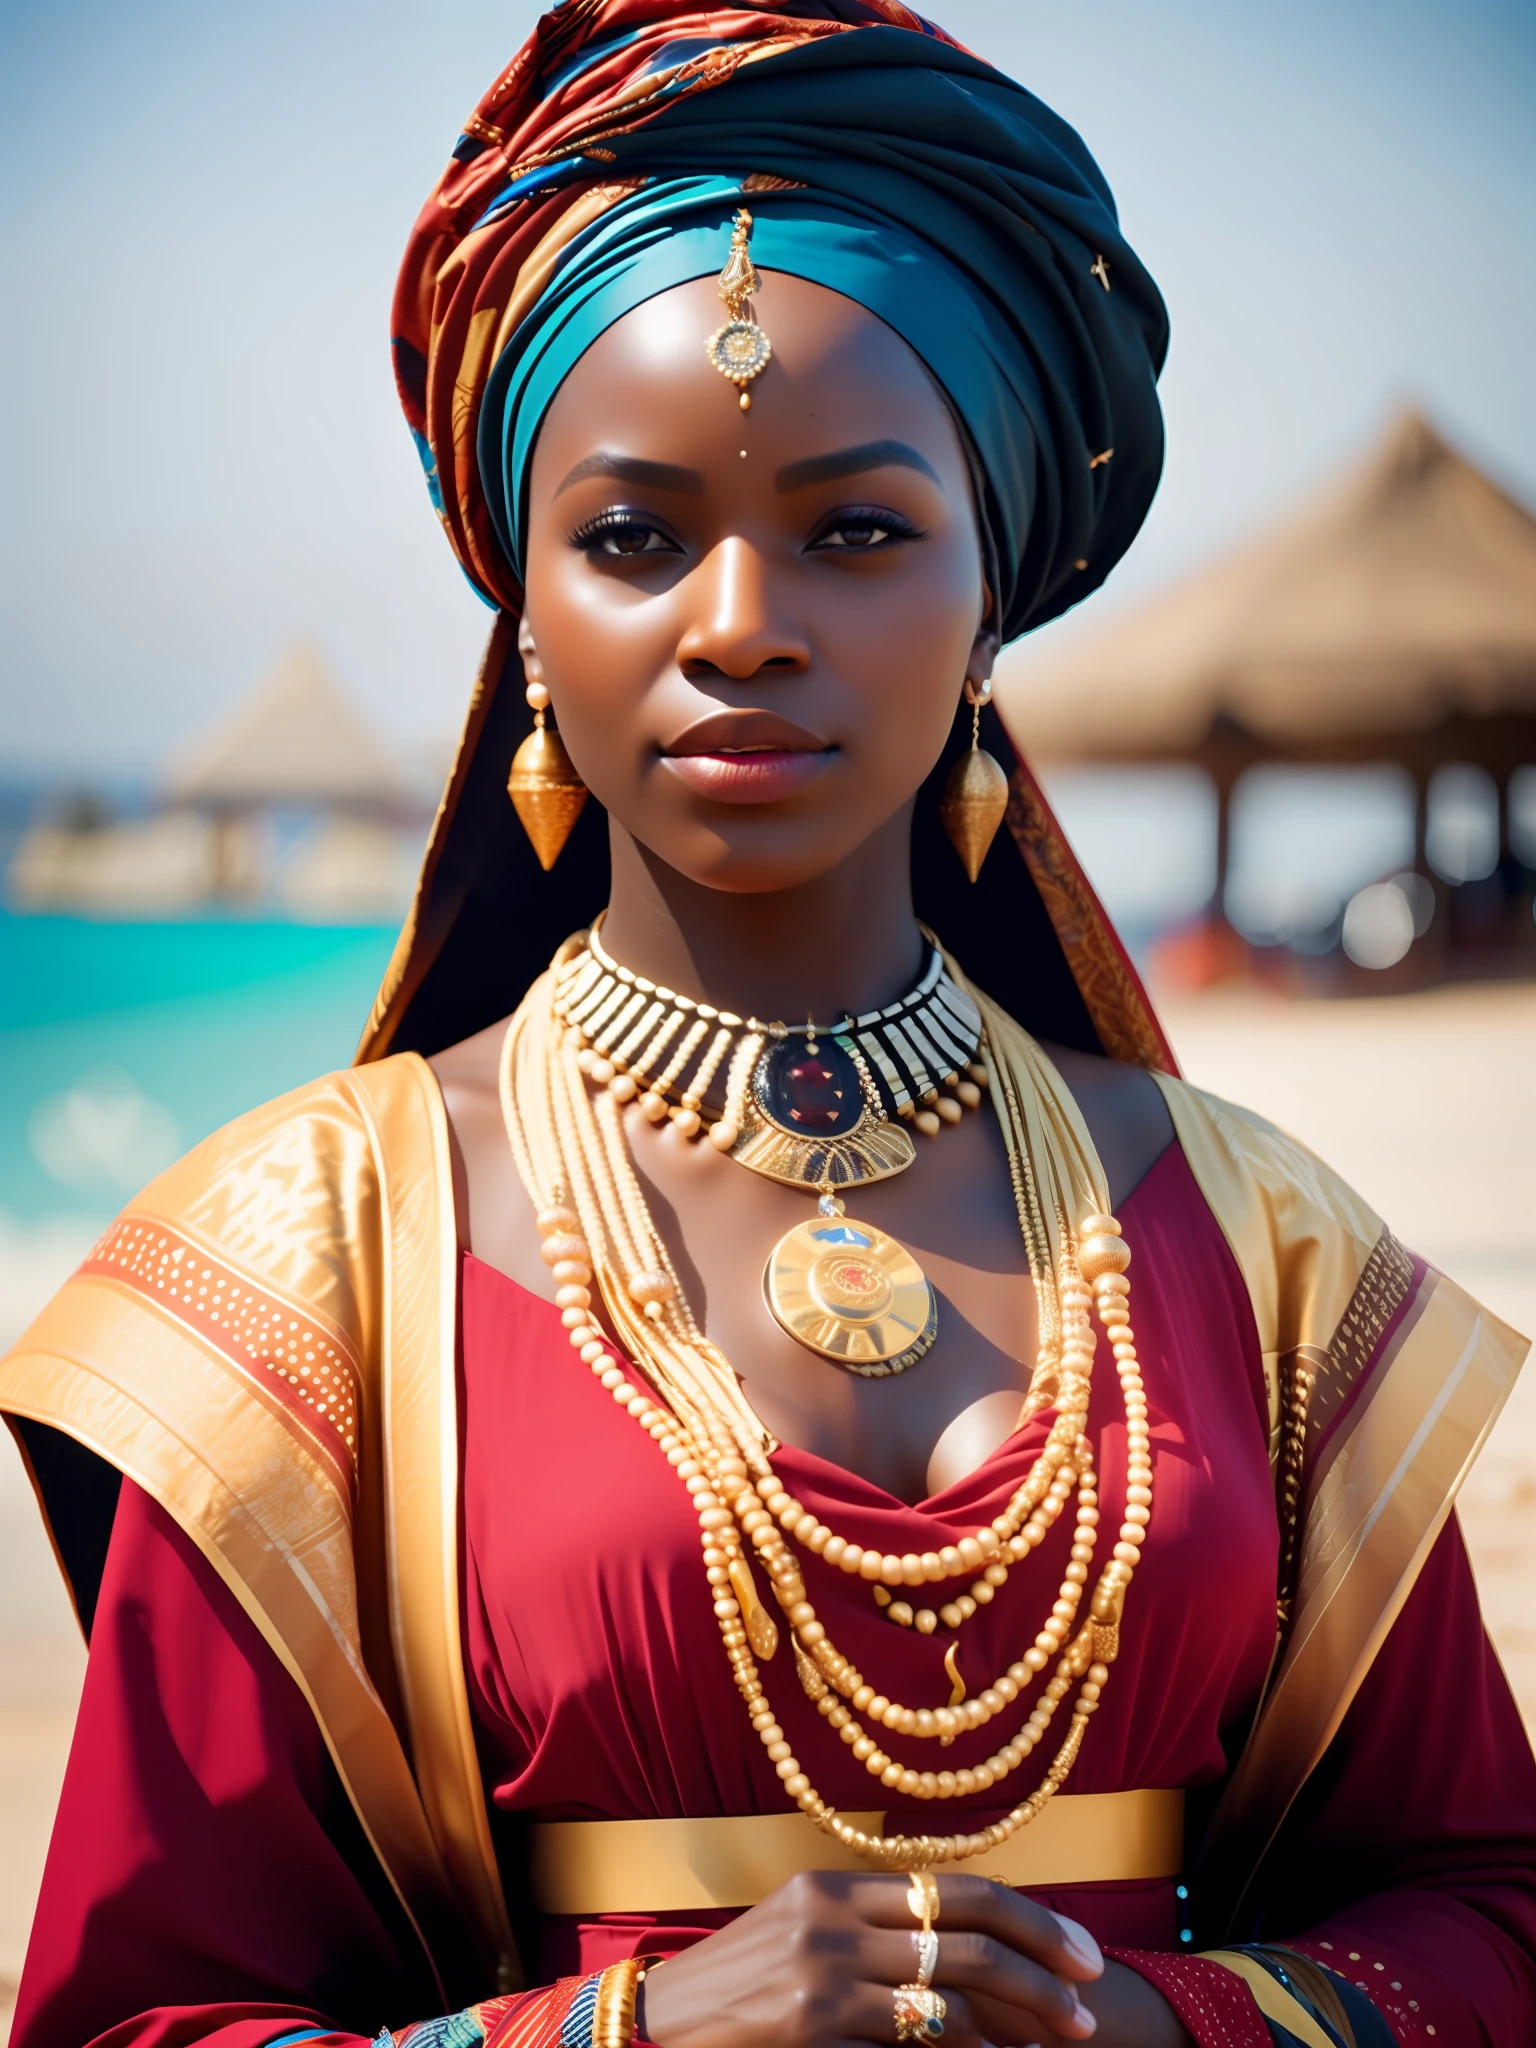 他妈的_科幻, 他妈的_科幻_v2, 一位非常美丽的非洲年轻女性的画像, 在海滩前, 色彩丰富的衣服, 头巾和金色非洲珠宝, 特写, 帝王姿态. 他妈的_电影_v2. 他妈的_电影_v2